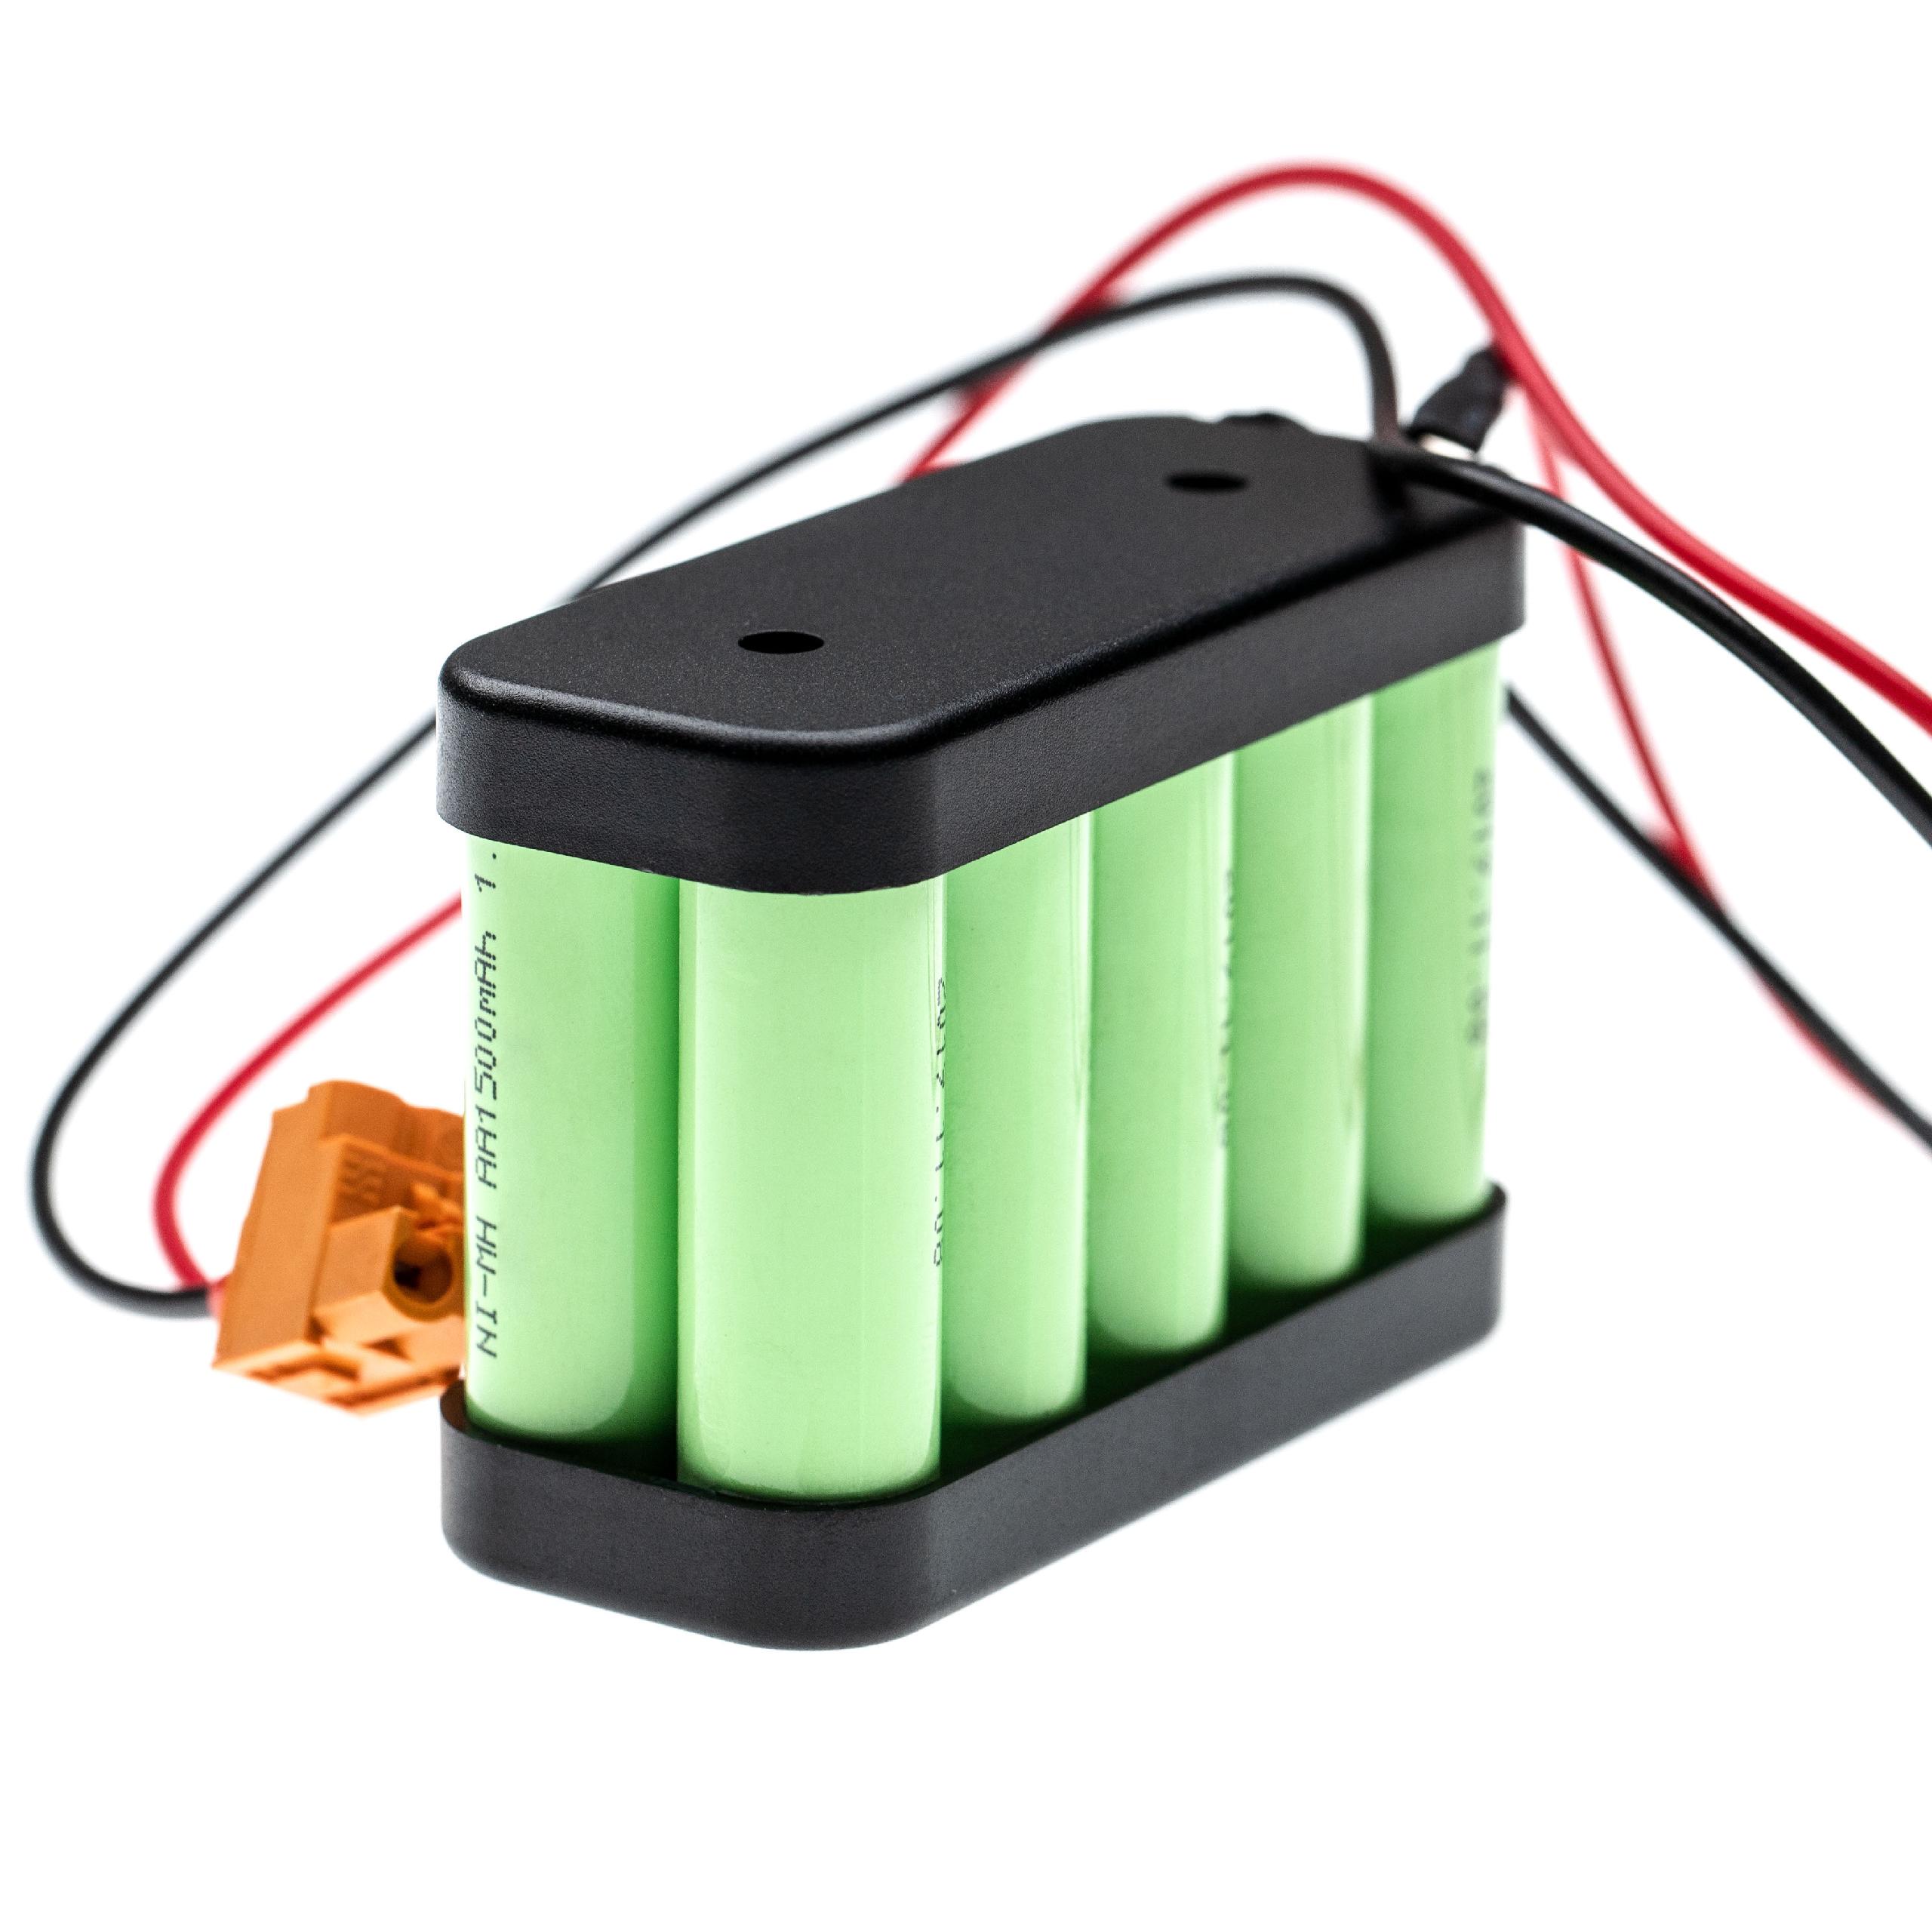 Batterie remplace Besam 654745 pour porte coulissante électrique - 1500mAh 12V NiMH